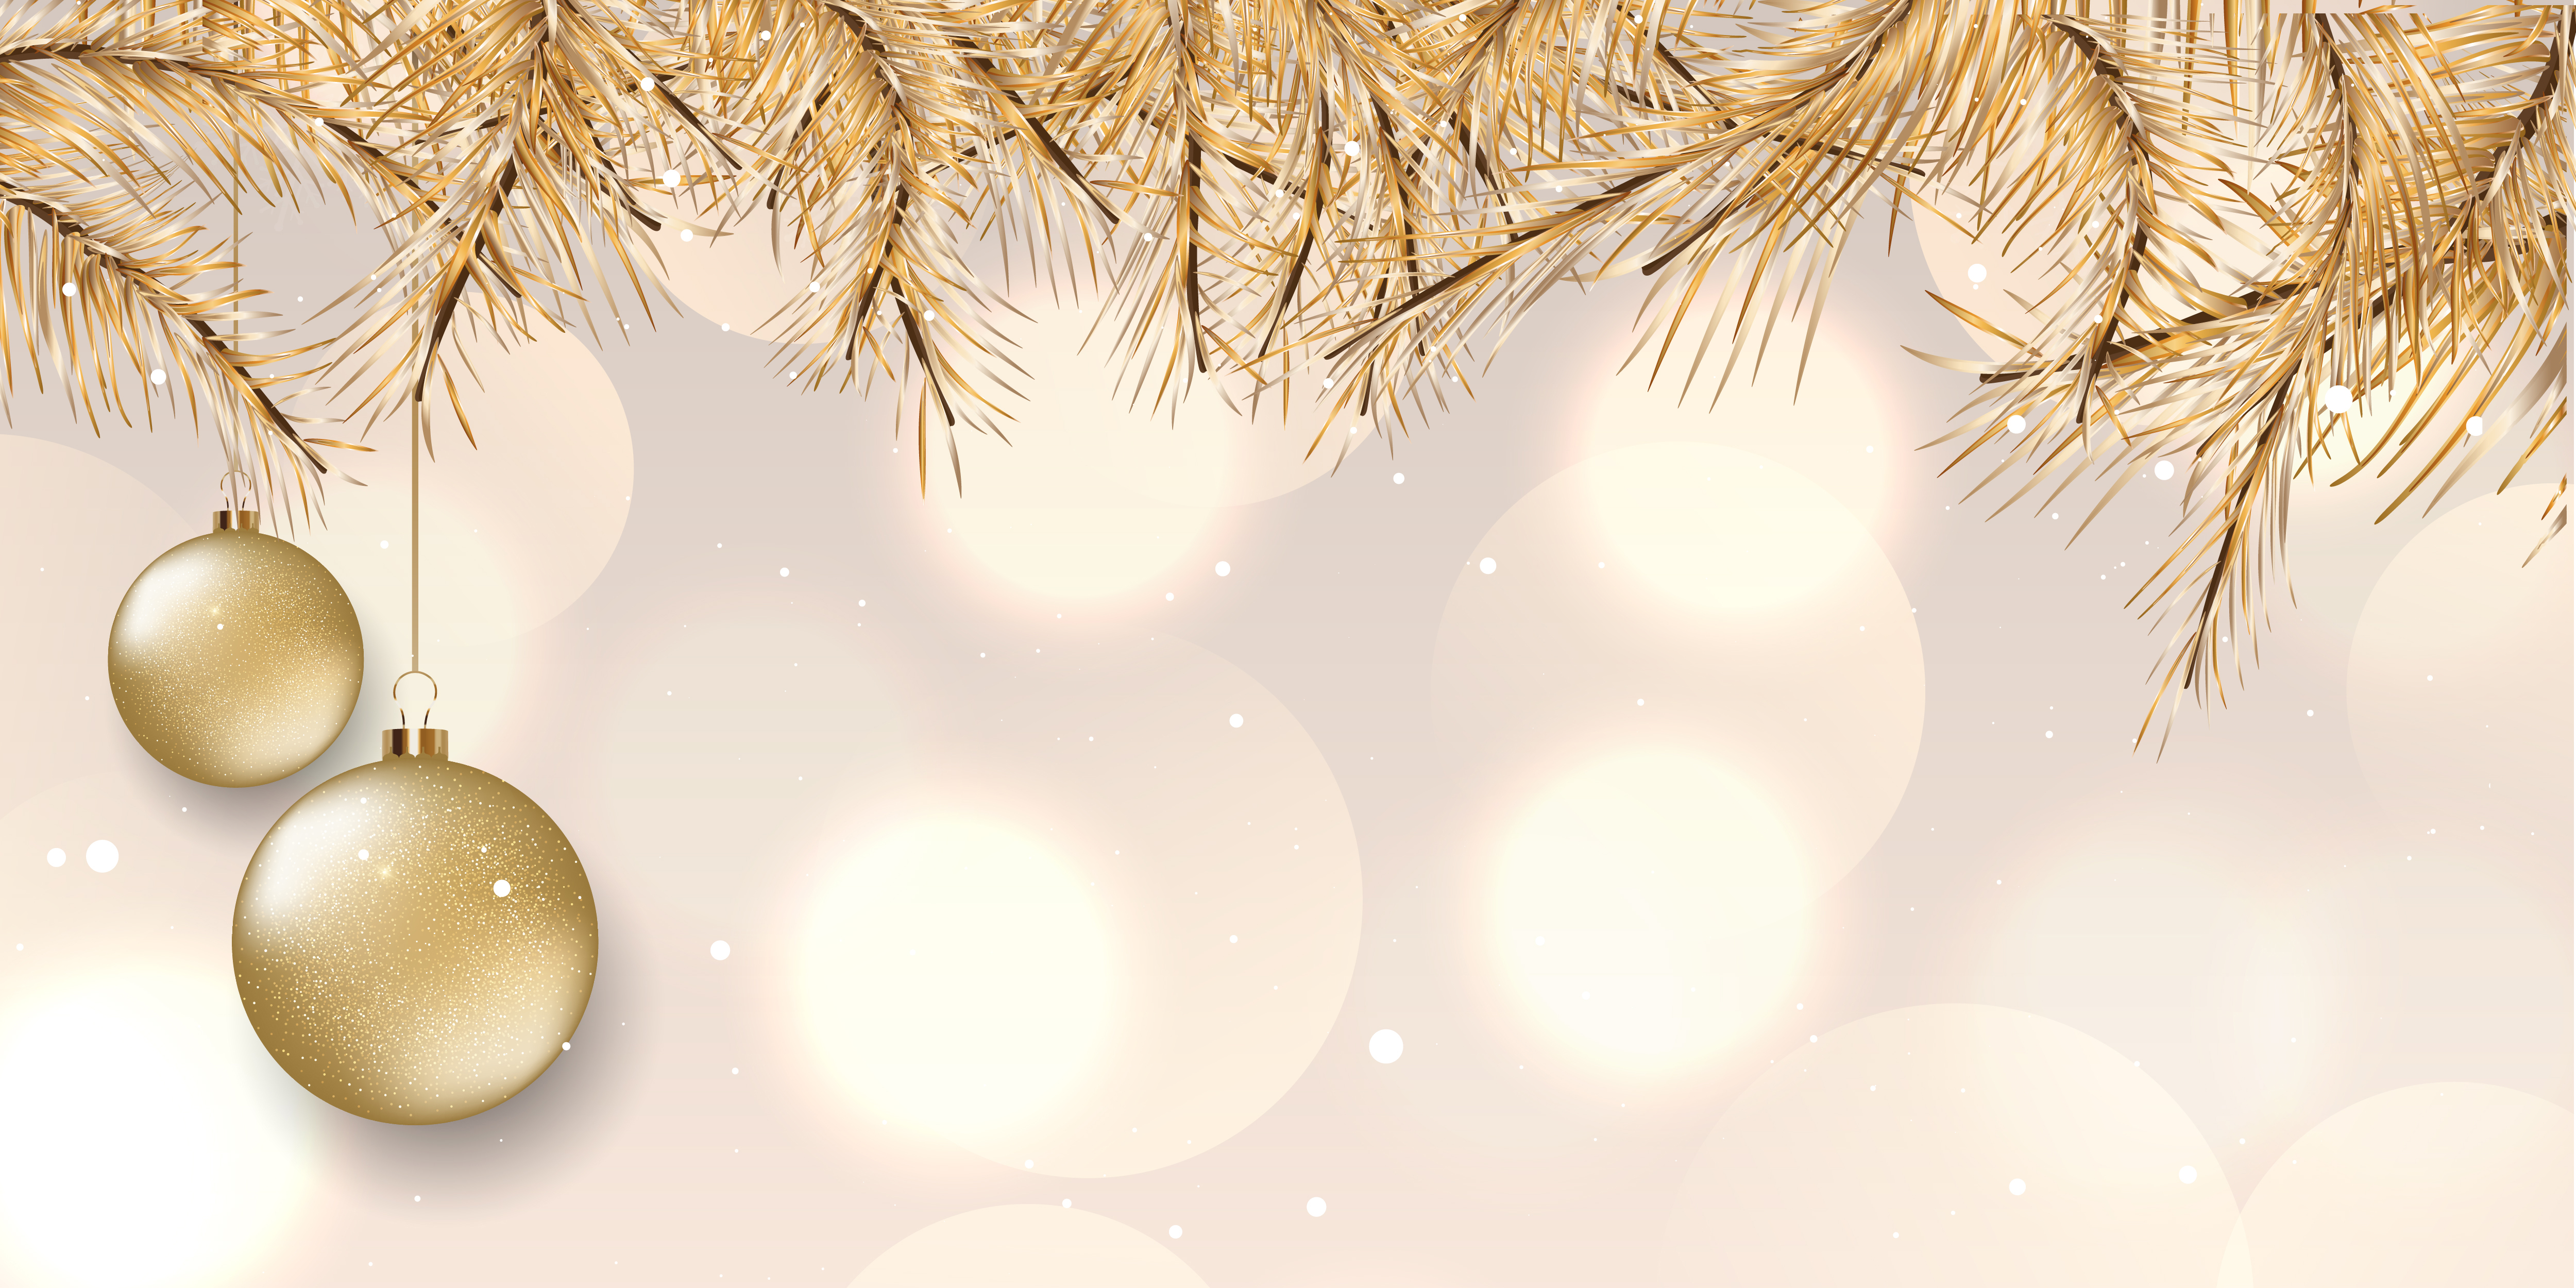 Elegant Christmas banner design